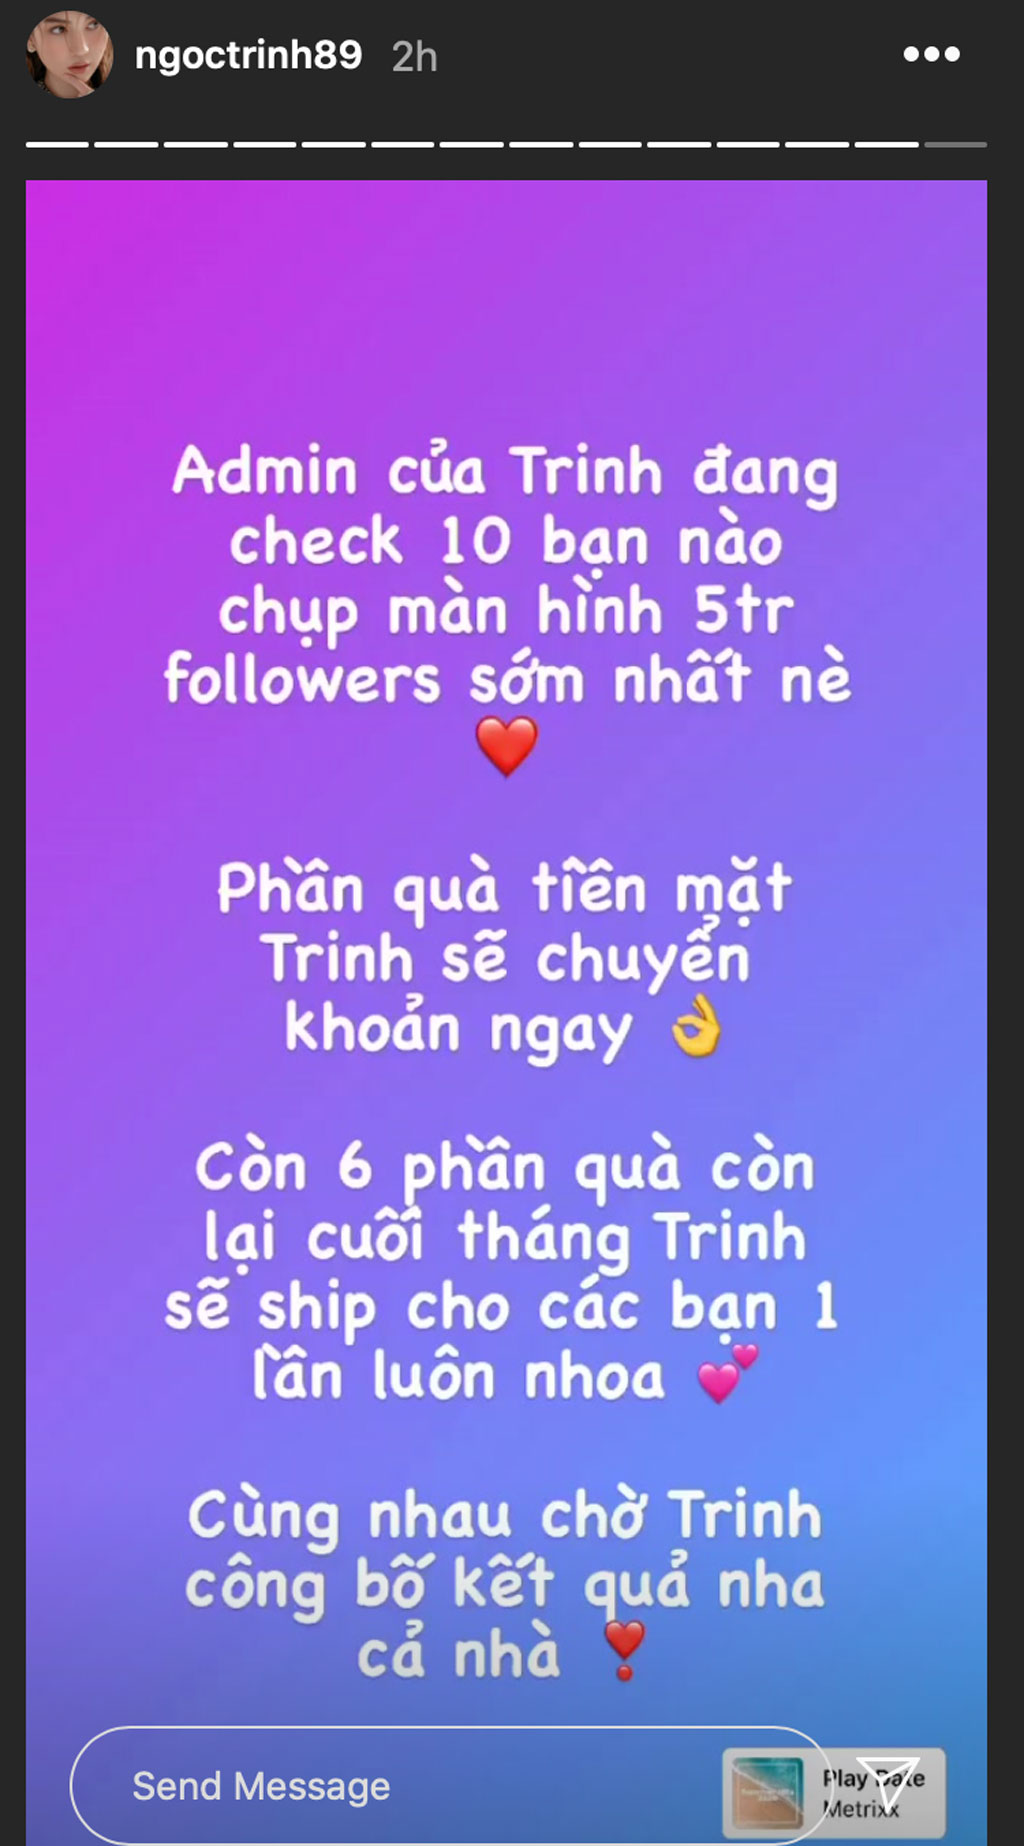 Ngọc Trinh đạt 5 triệu follow trên Instagram, tặng ngay tiền mặt cho fan2